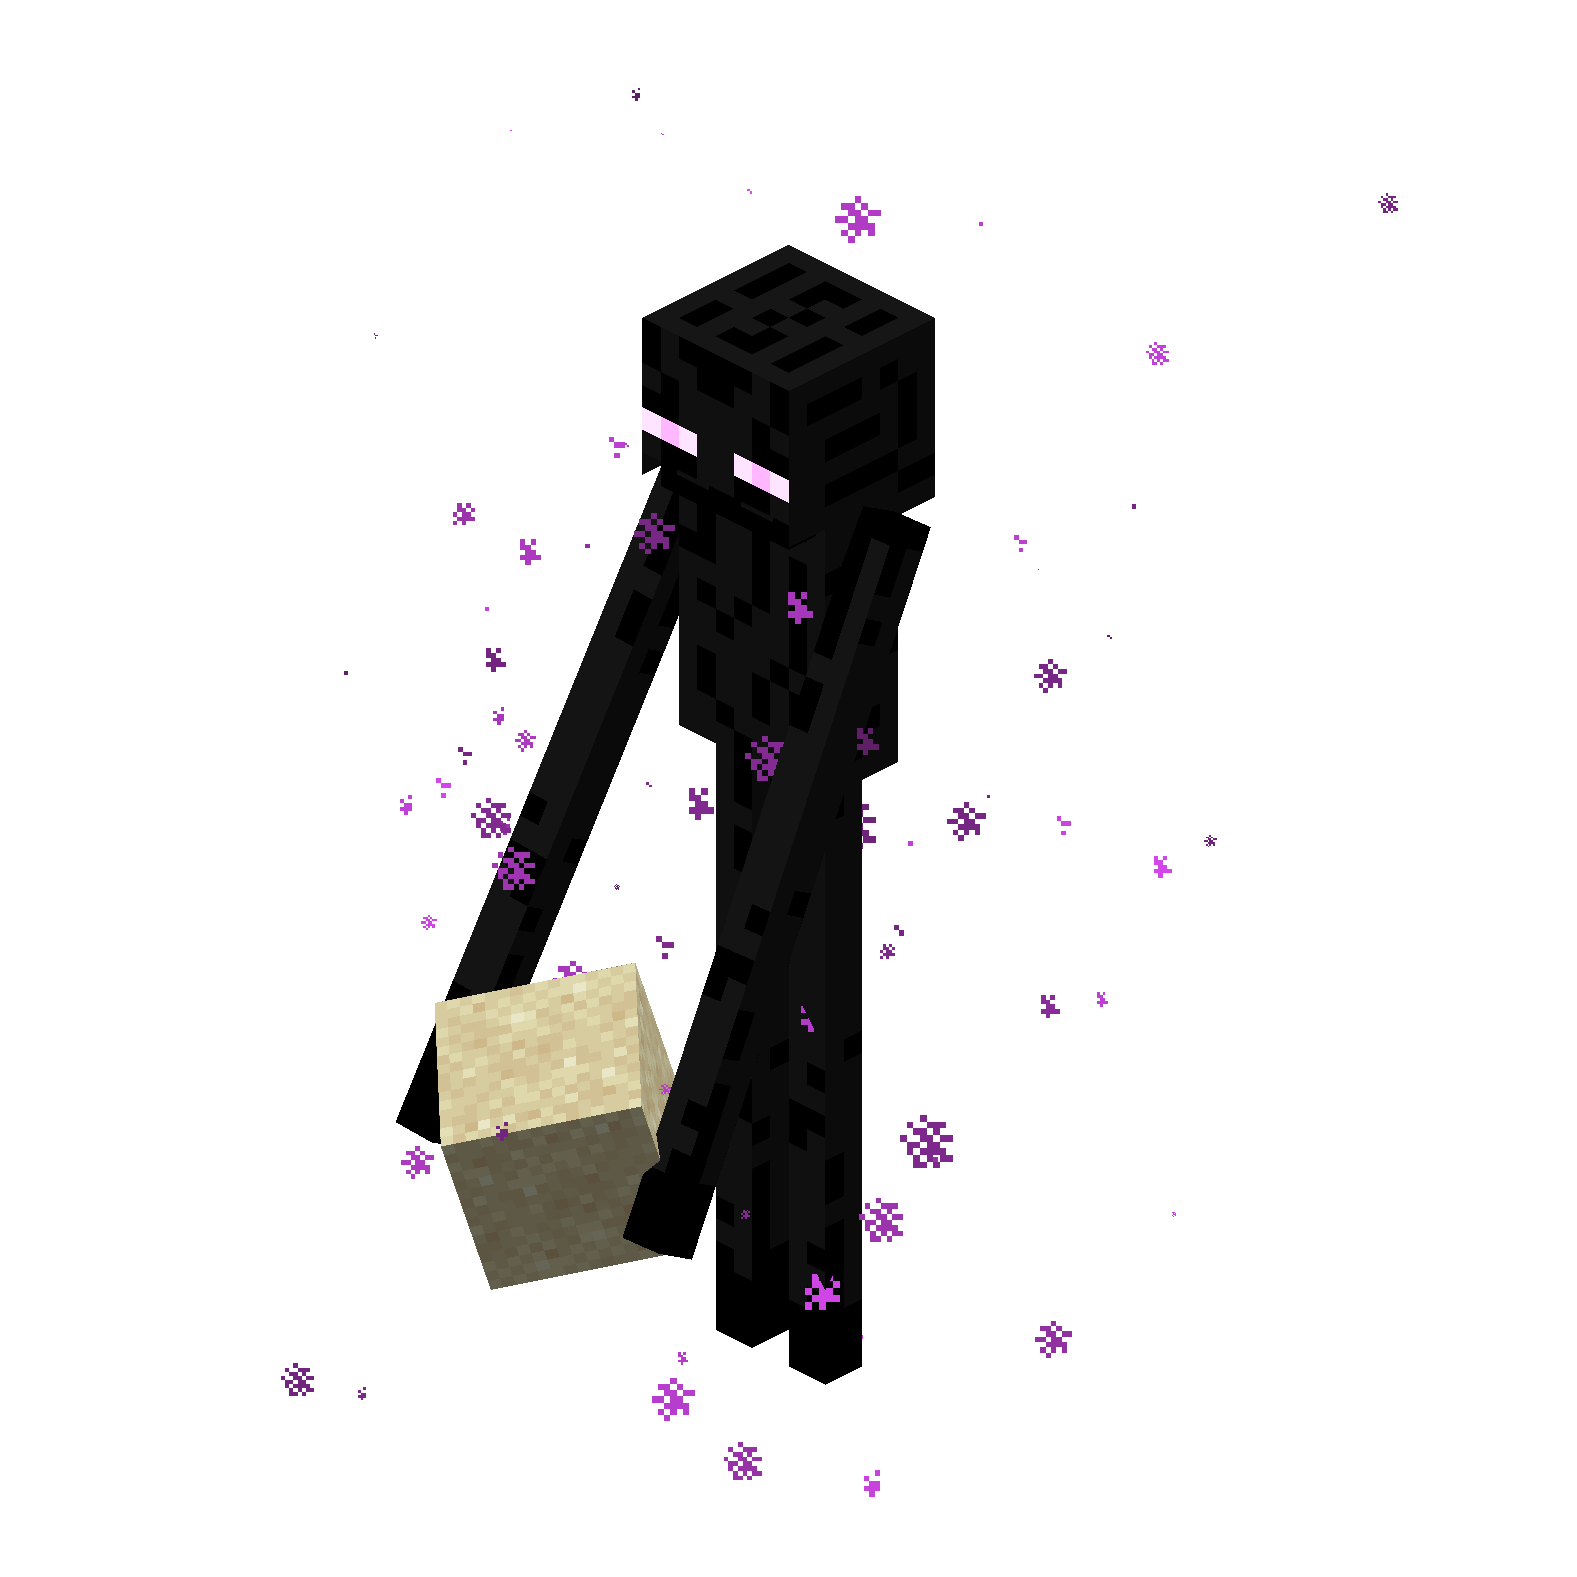 Figura Bonecos Minecraft PNG - Zumbi PNG com fundo transparente!